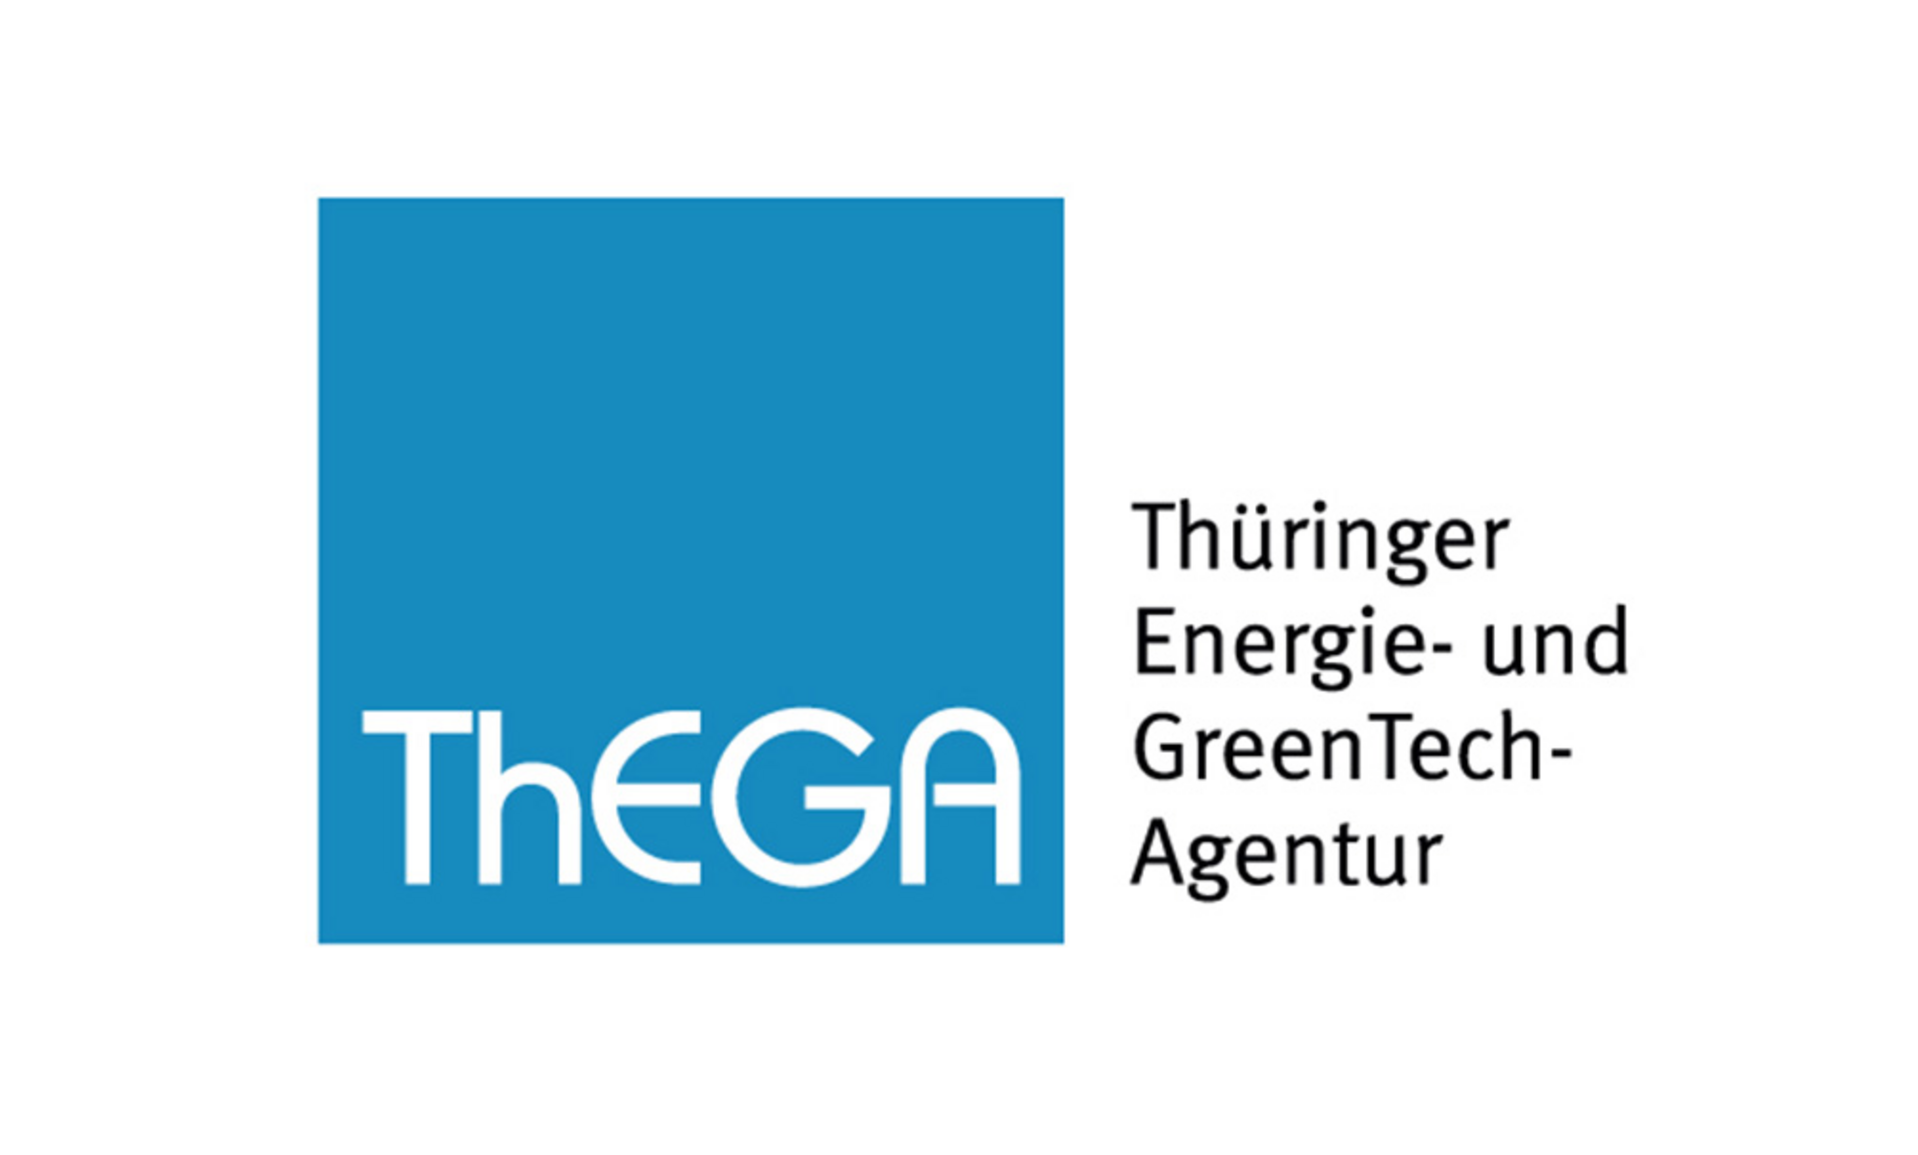 Logo ThEGA